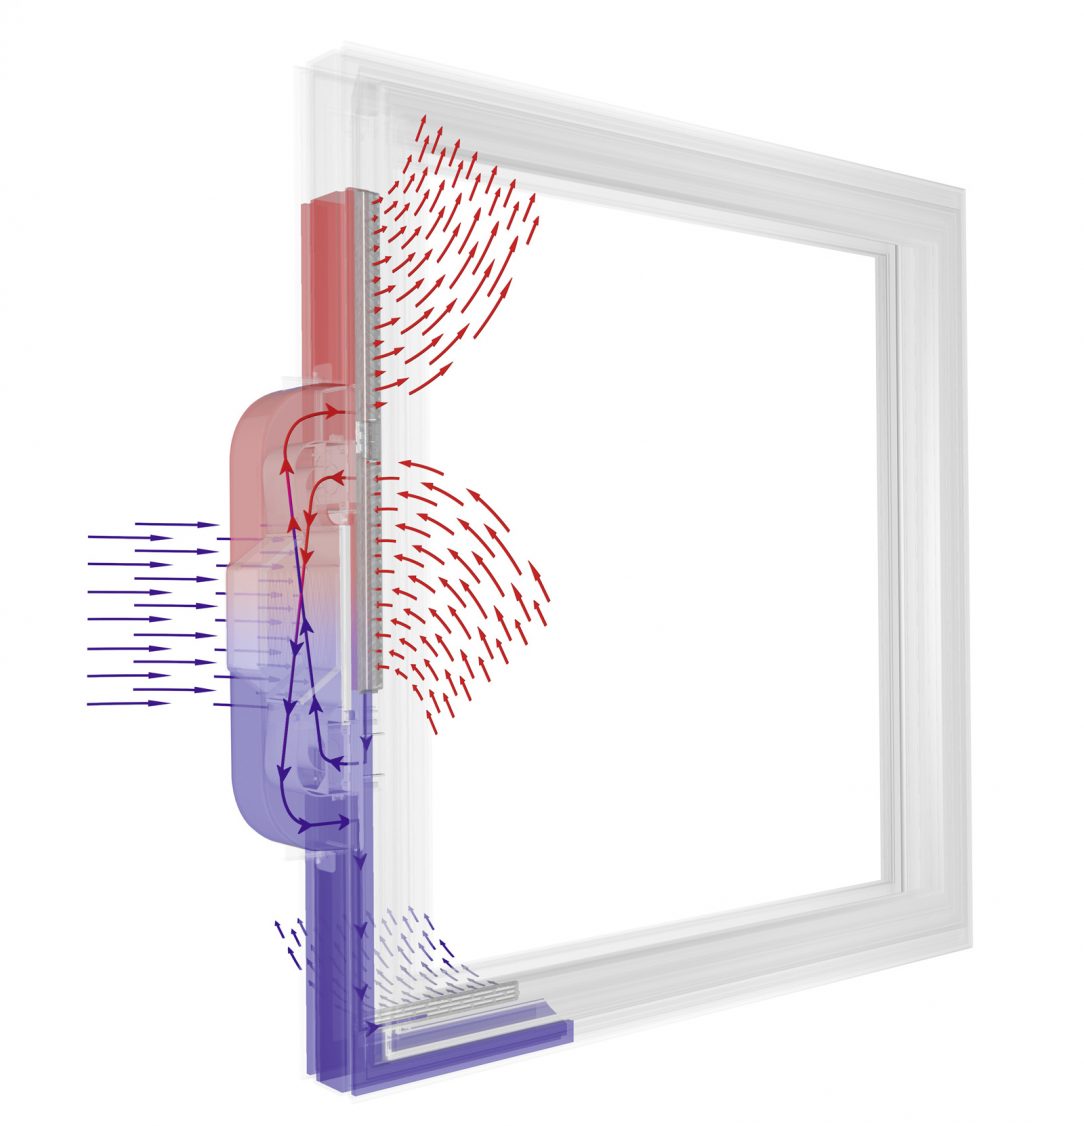 Internorm I tec Vetranie je integrované priamo do rámu okna zabezpečuje 24 hodín čerstvý vzduch a optimálnu vnutornú klímu.